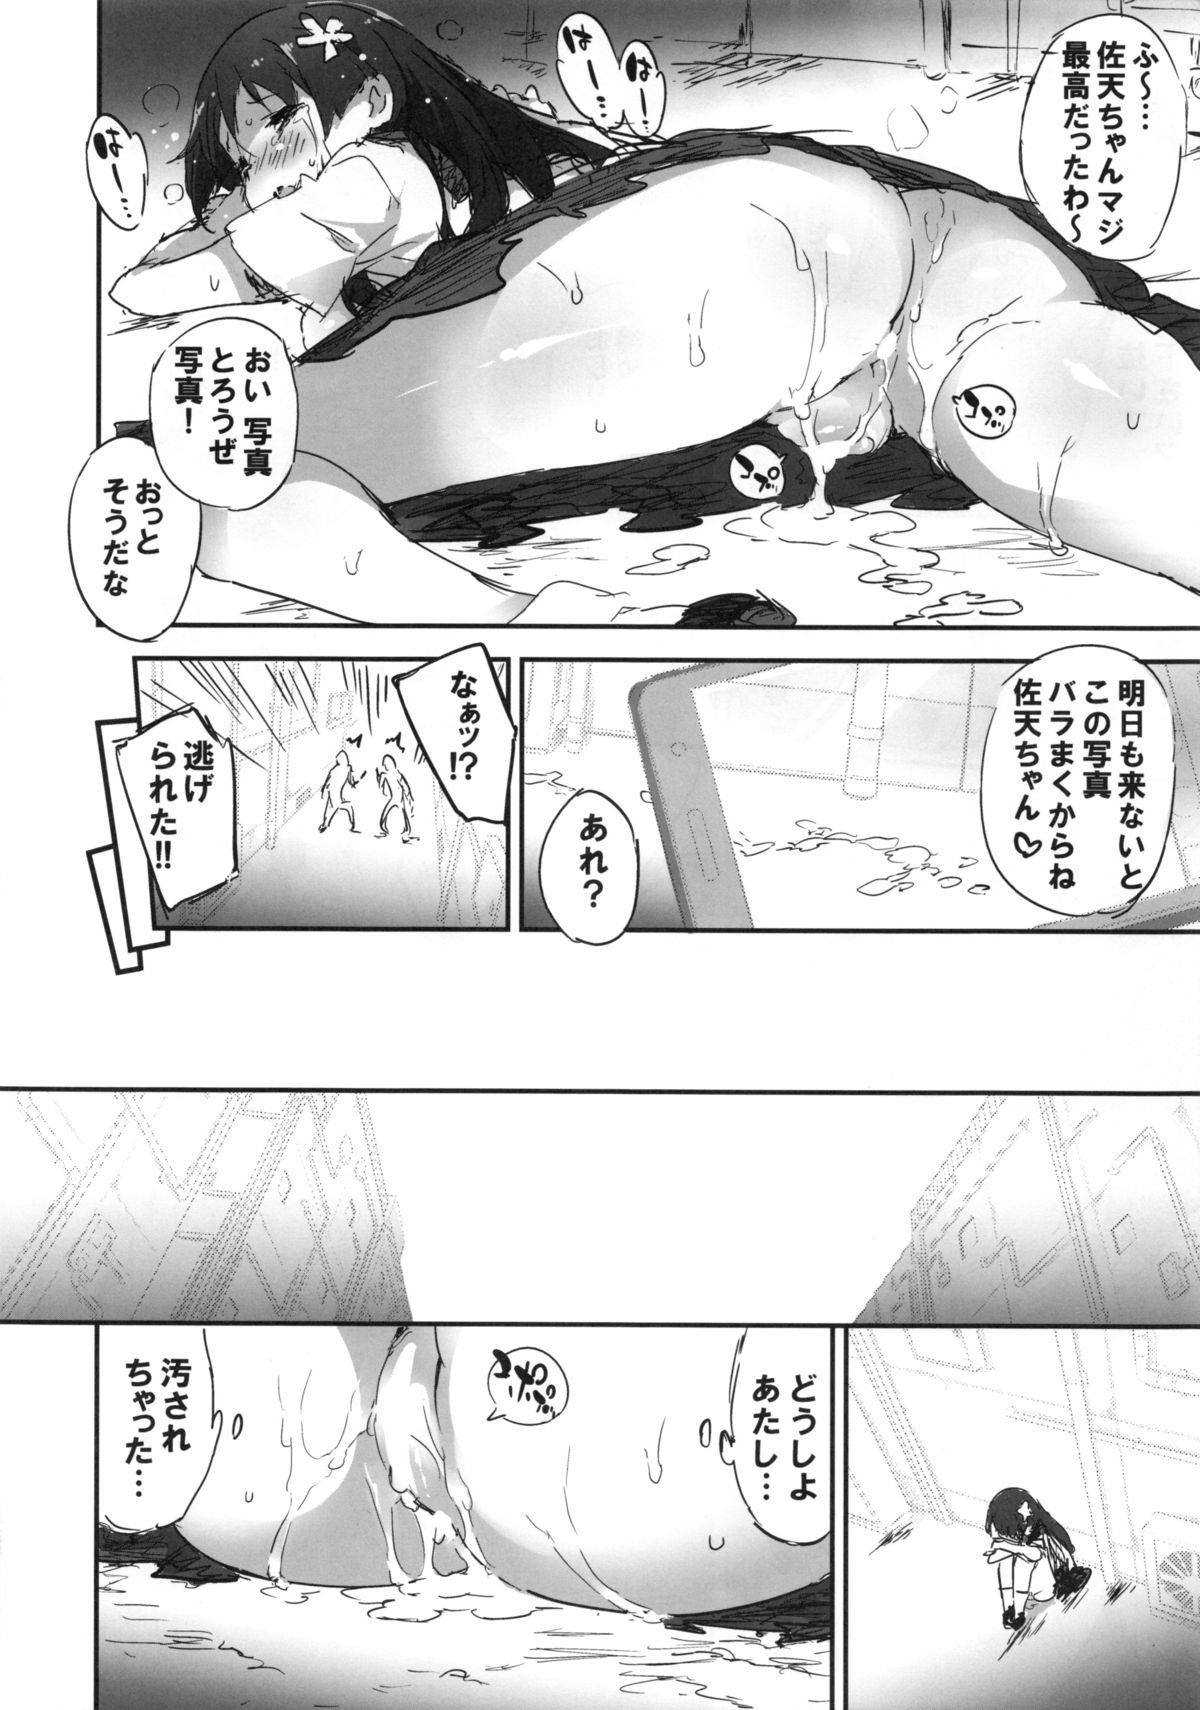 Beurette Rojiura Saten - Toaru kagaku no railgun Sucking Cocks - Page 11